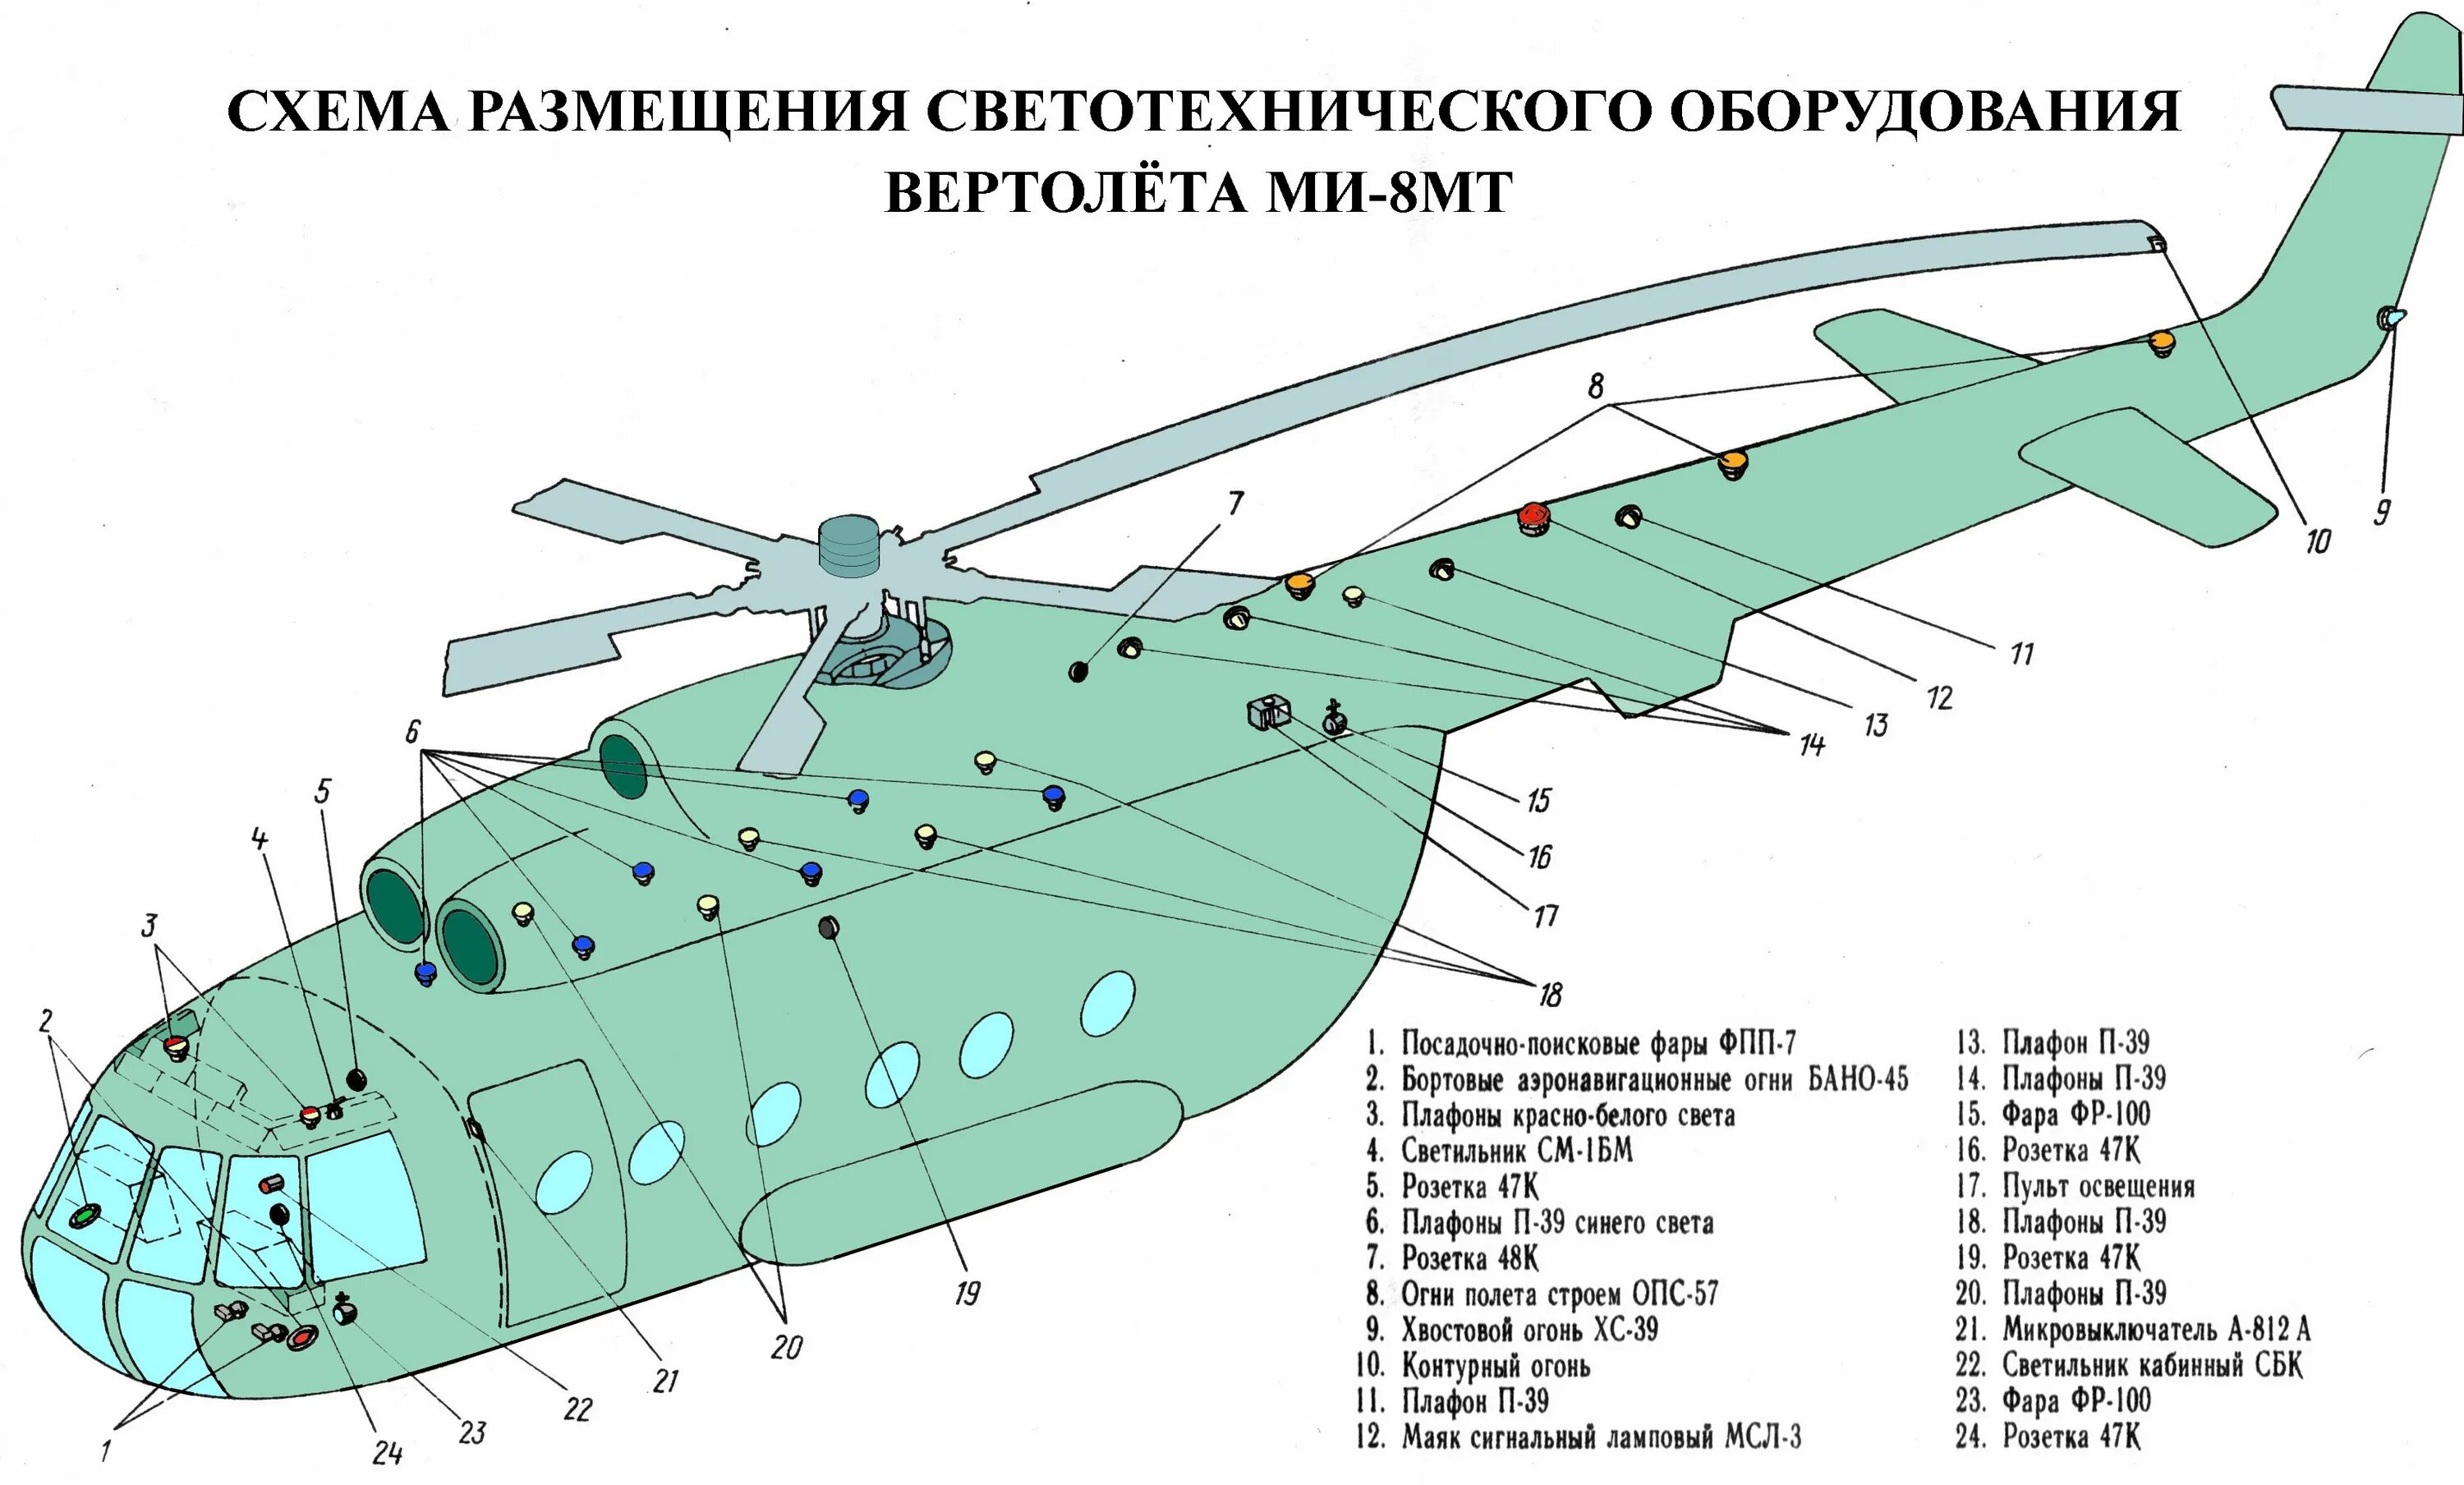 Системы вертолета ми 8. Схема вертолета ми-8. Вертолет ми-8 чертеж фюзеляжа. Конструкция фюзеляжа вертолета ми-8. Светотехническое оборудование вертолета ми26.